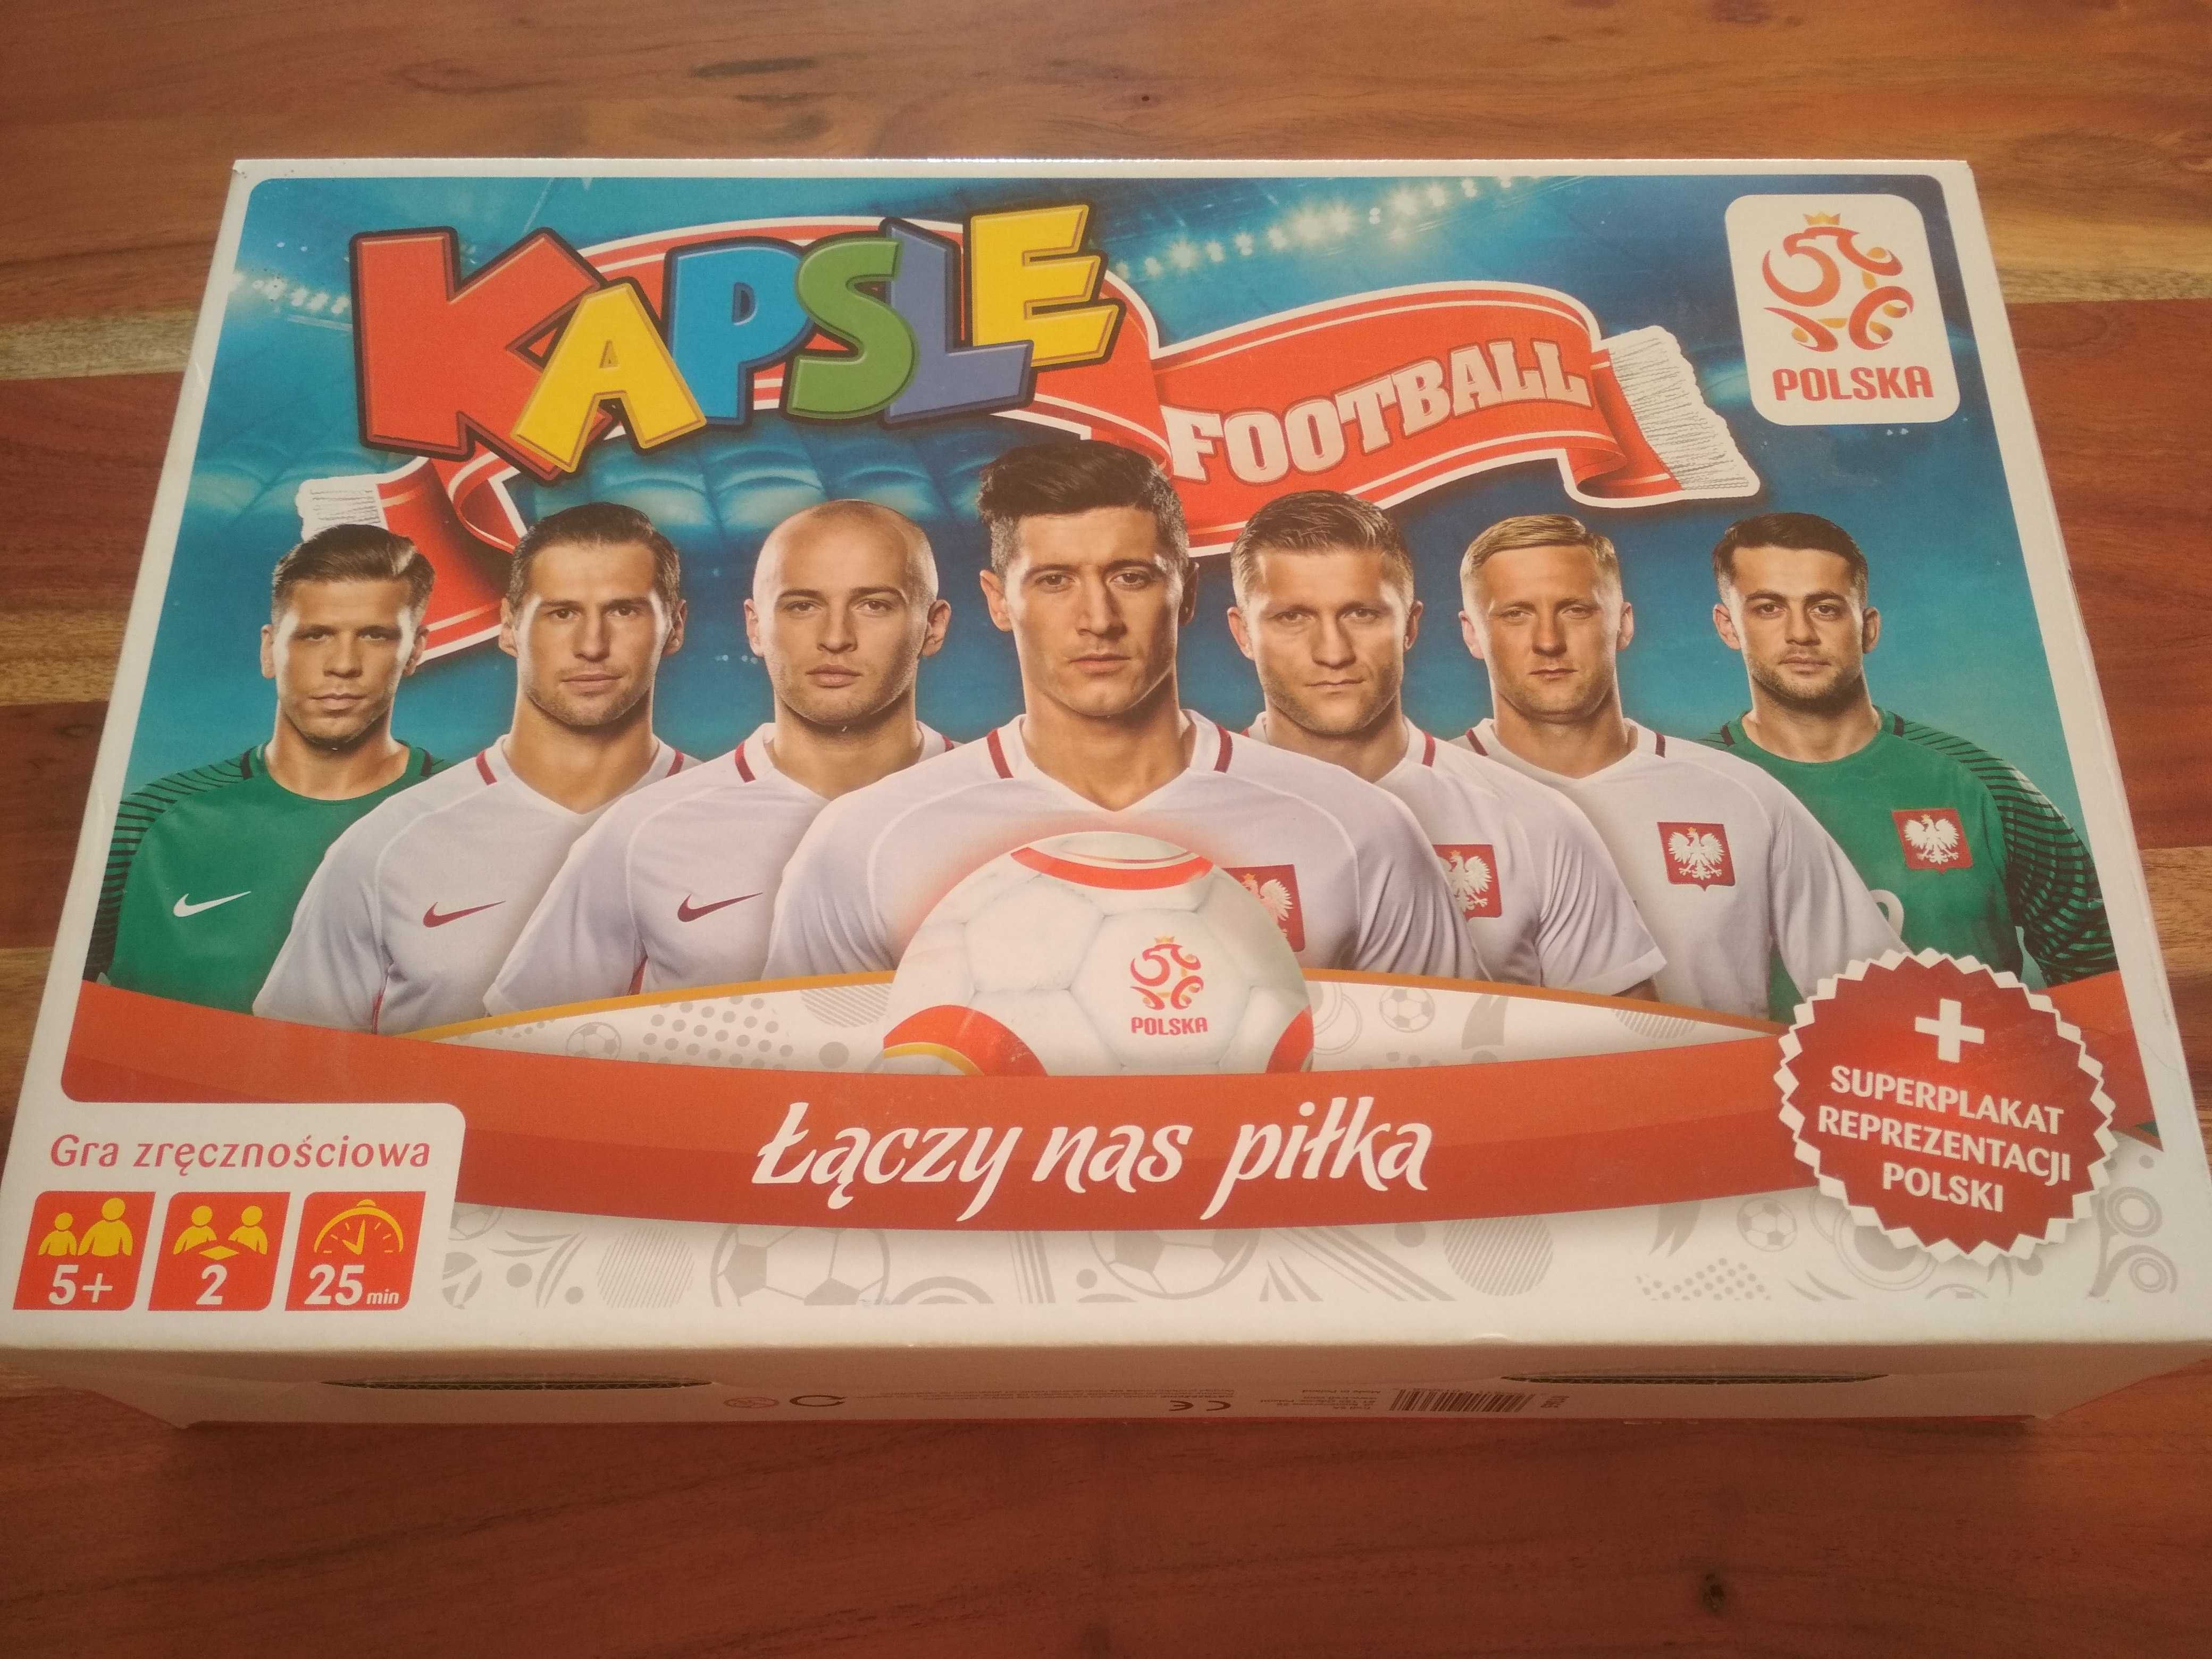 Gra Kapsle piłka nożna dla fana polskiego futbolu stan bdb